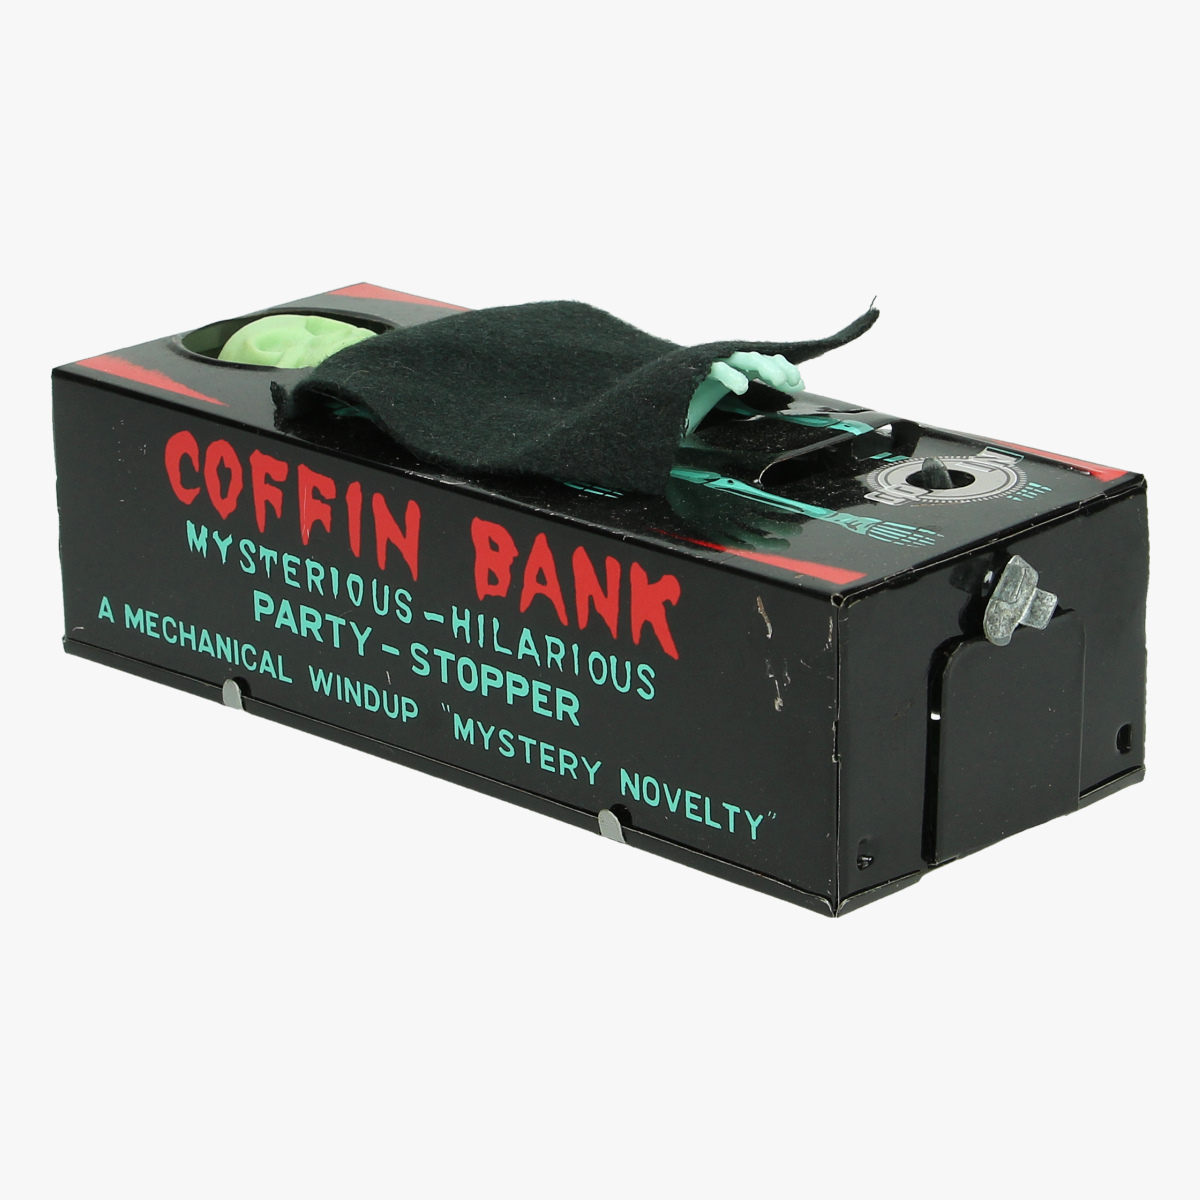 Afbeeldingen van spaarpot coffin bank